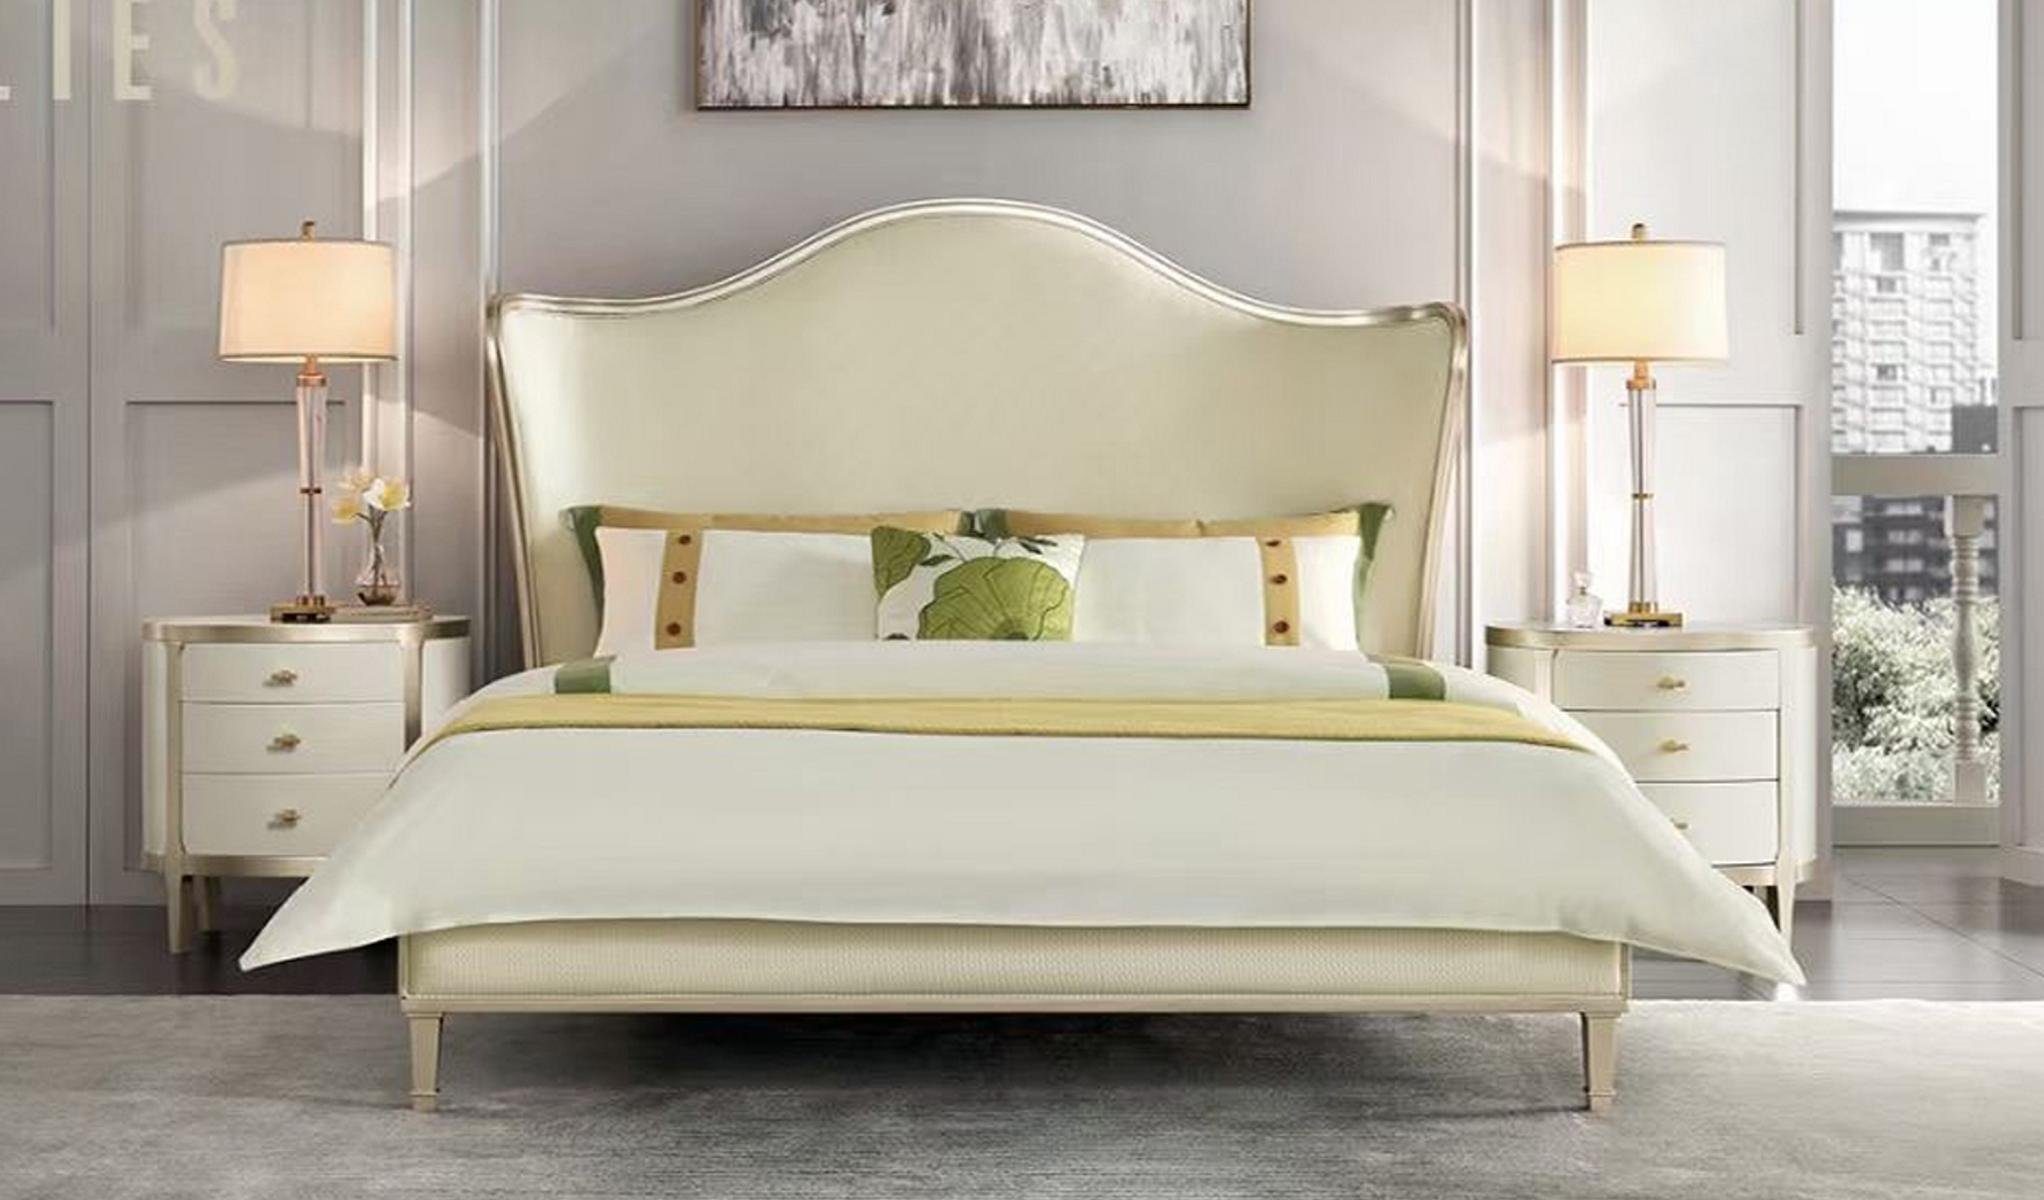 JVmoebel Bett, Doppelbetten Bett Betten Bett Modern Design Bettgestell Weiß